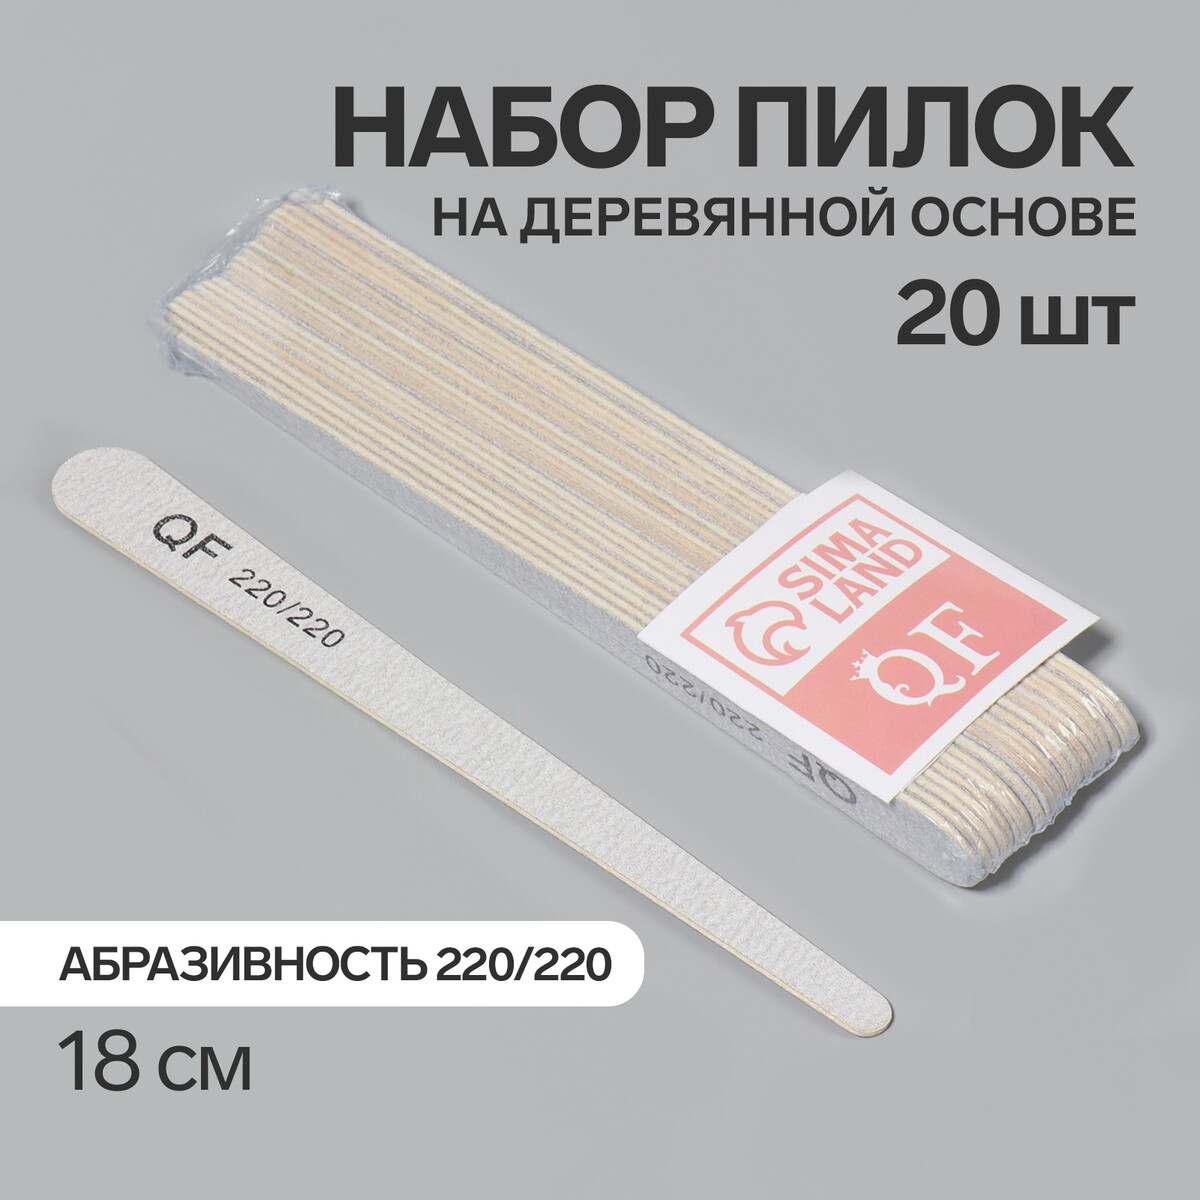 Пилка-наждак, набор 20 шт, деревянная основа, абразивность 220/220, 18 см, цвет серый основа и сменные файлы для пилки 18 см 10 шт абразивность 80